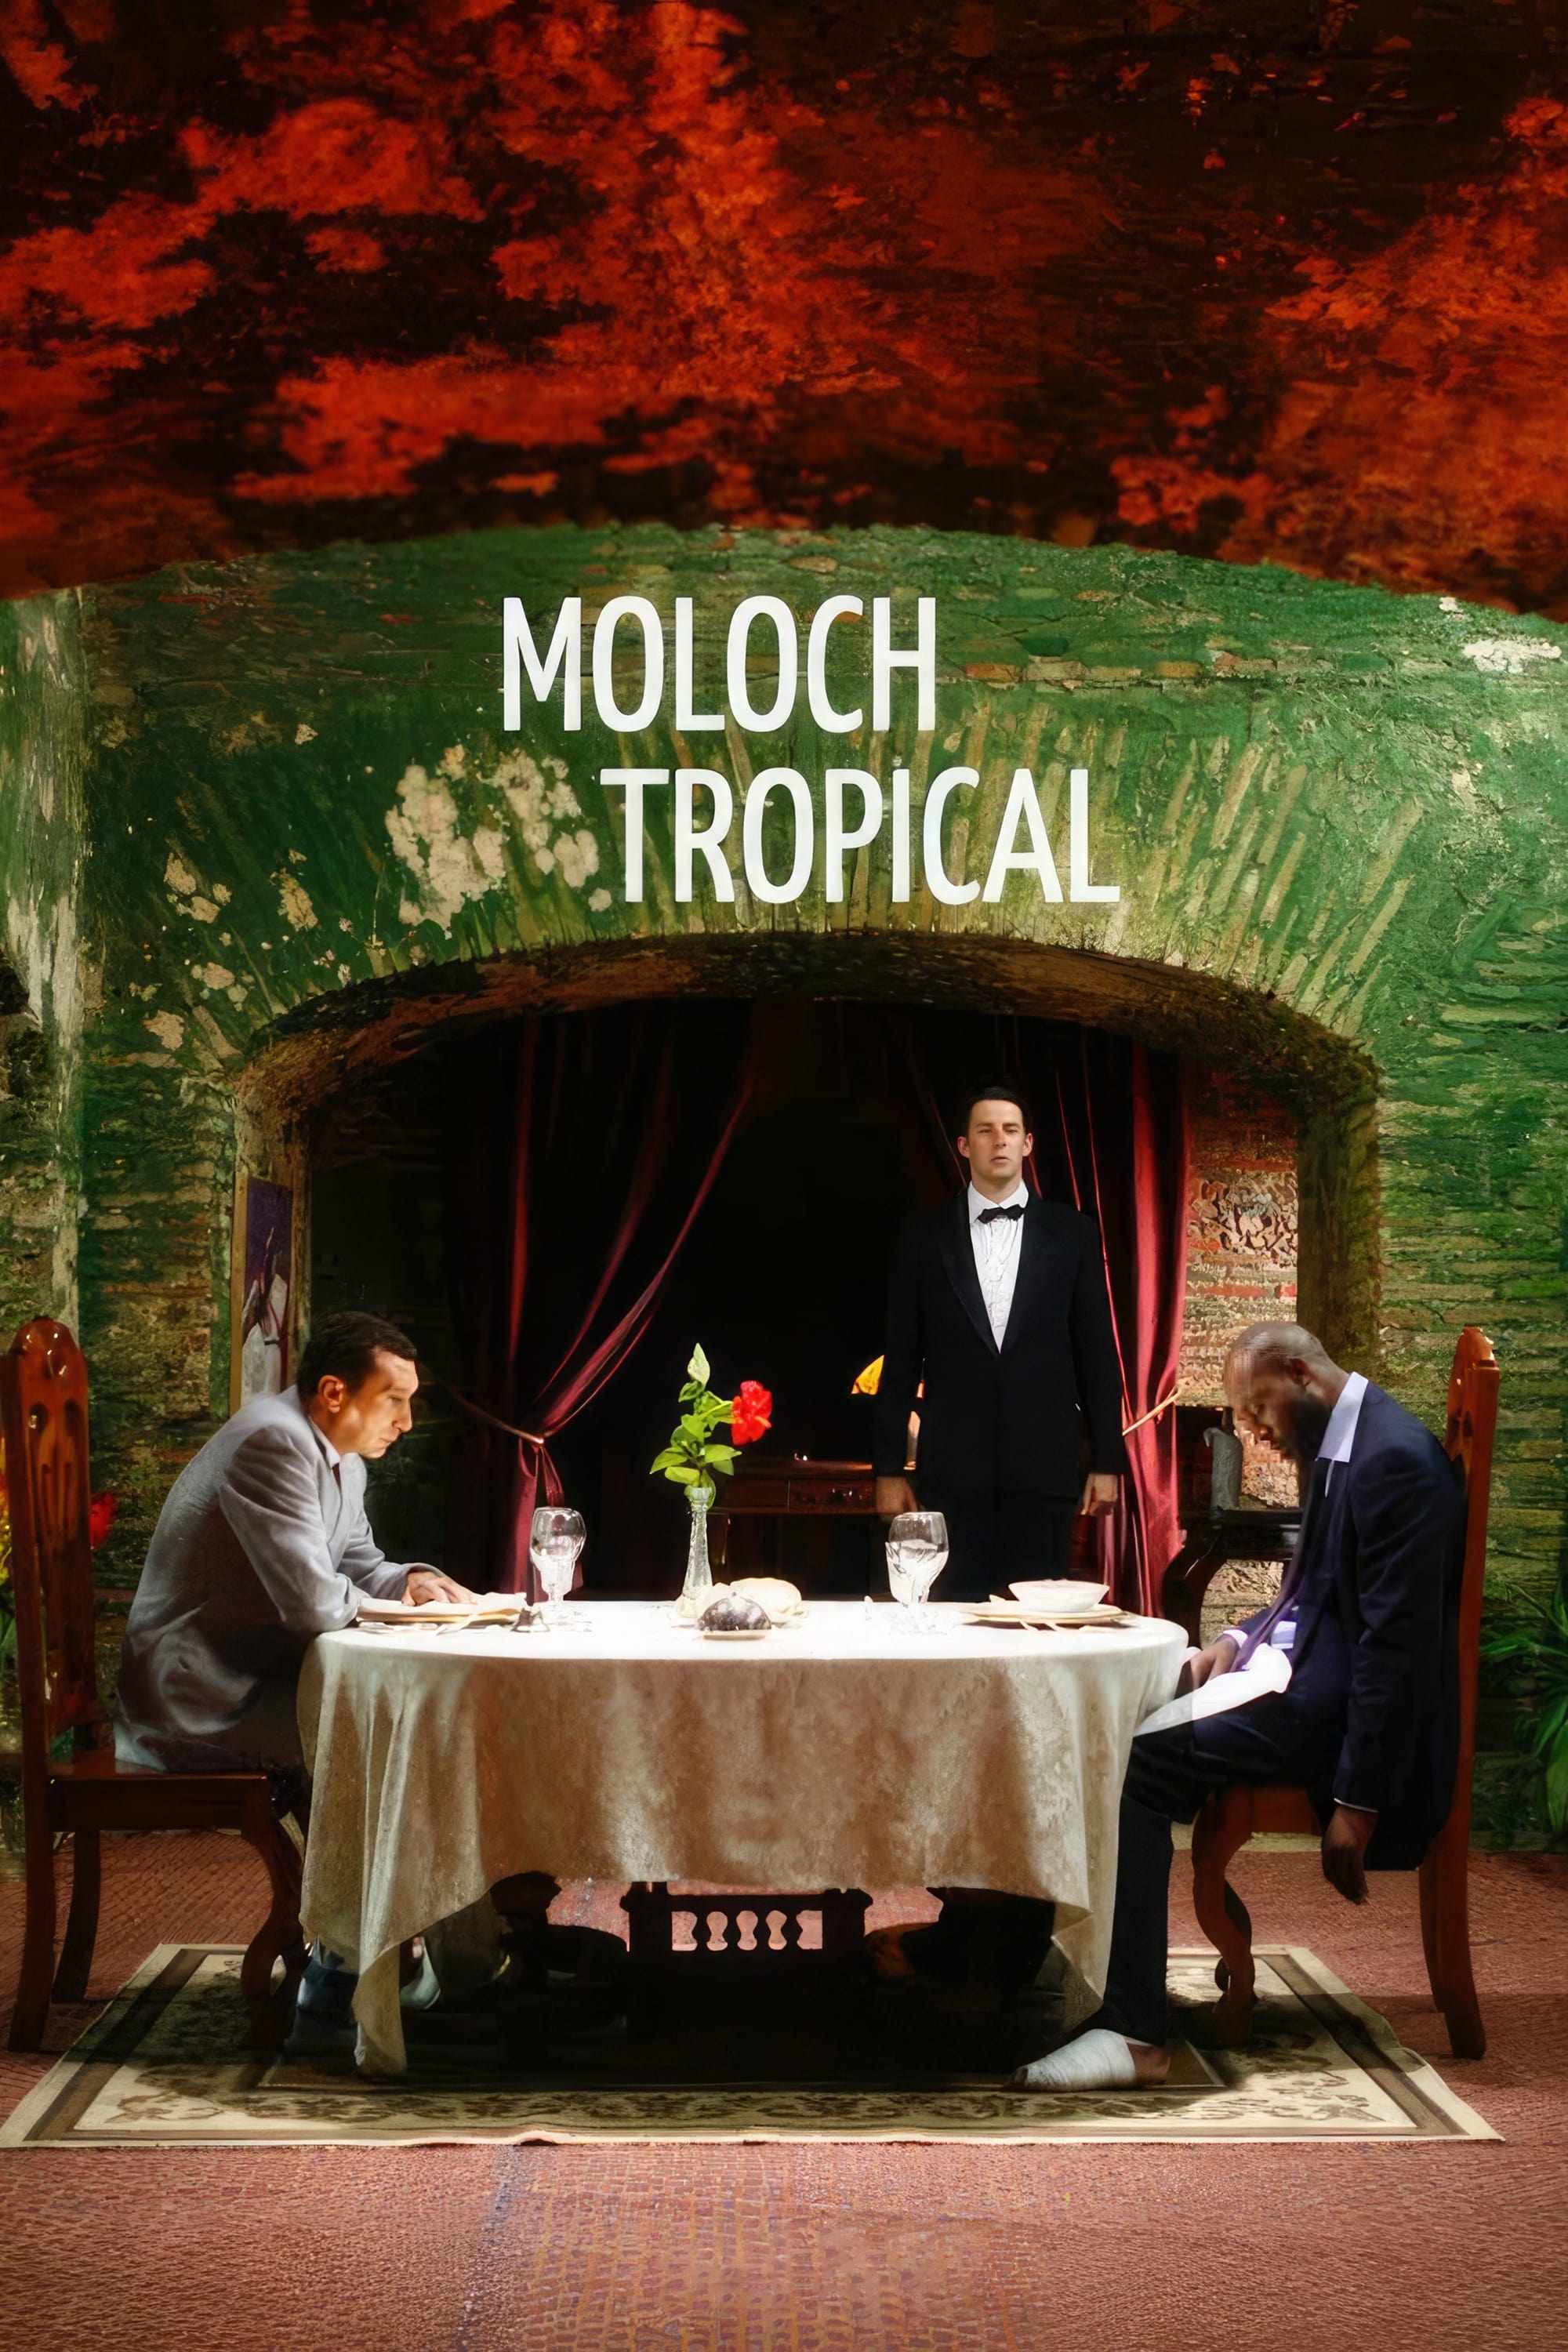 Moloch Tropical (2009)